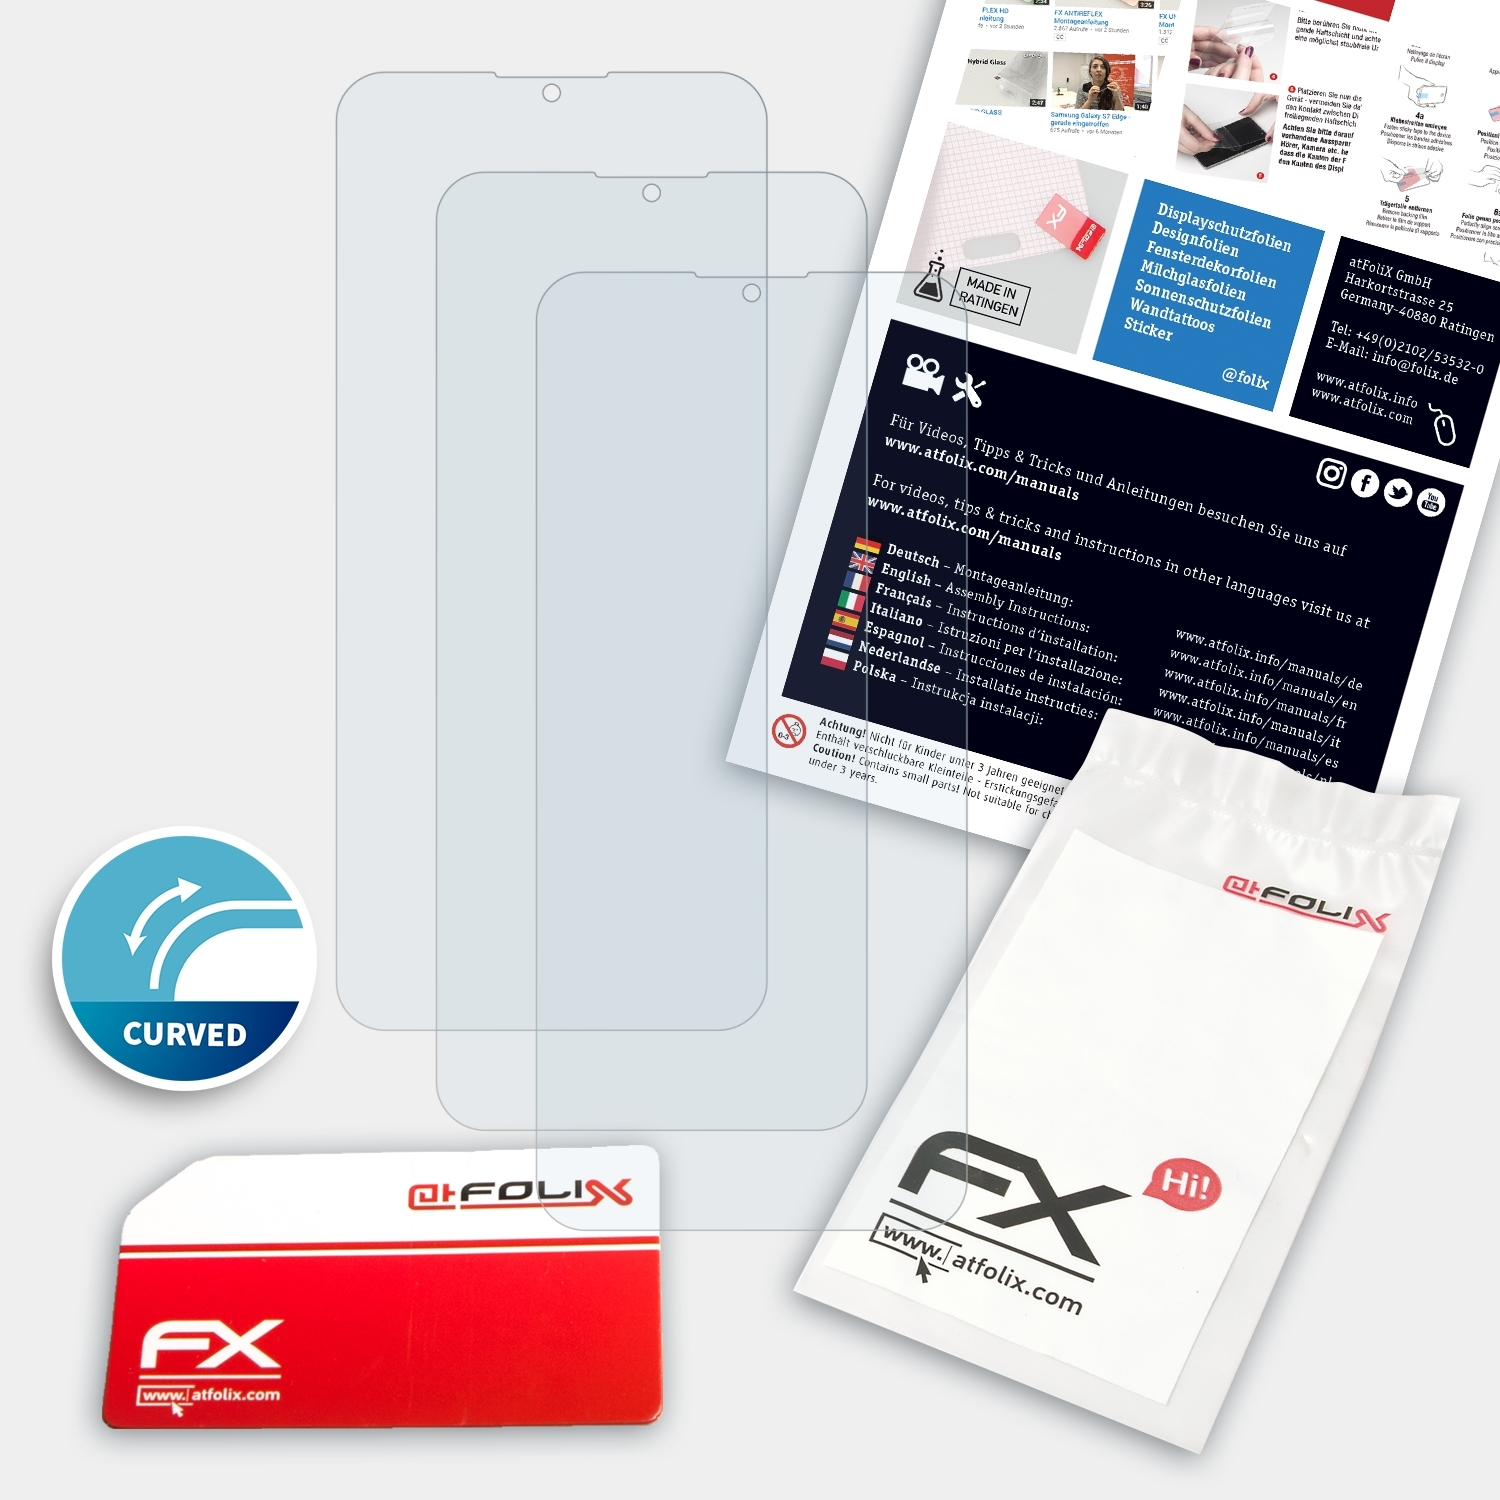 FX-ActiFleX ATFOLIX Nokia G21) Displayschutz(für 3x